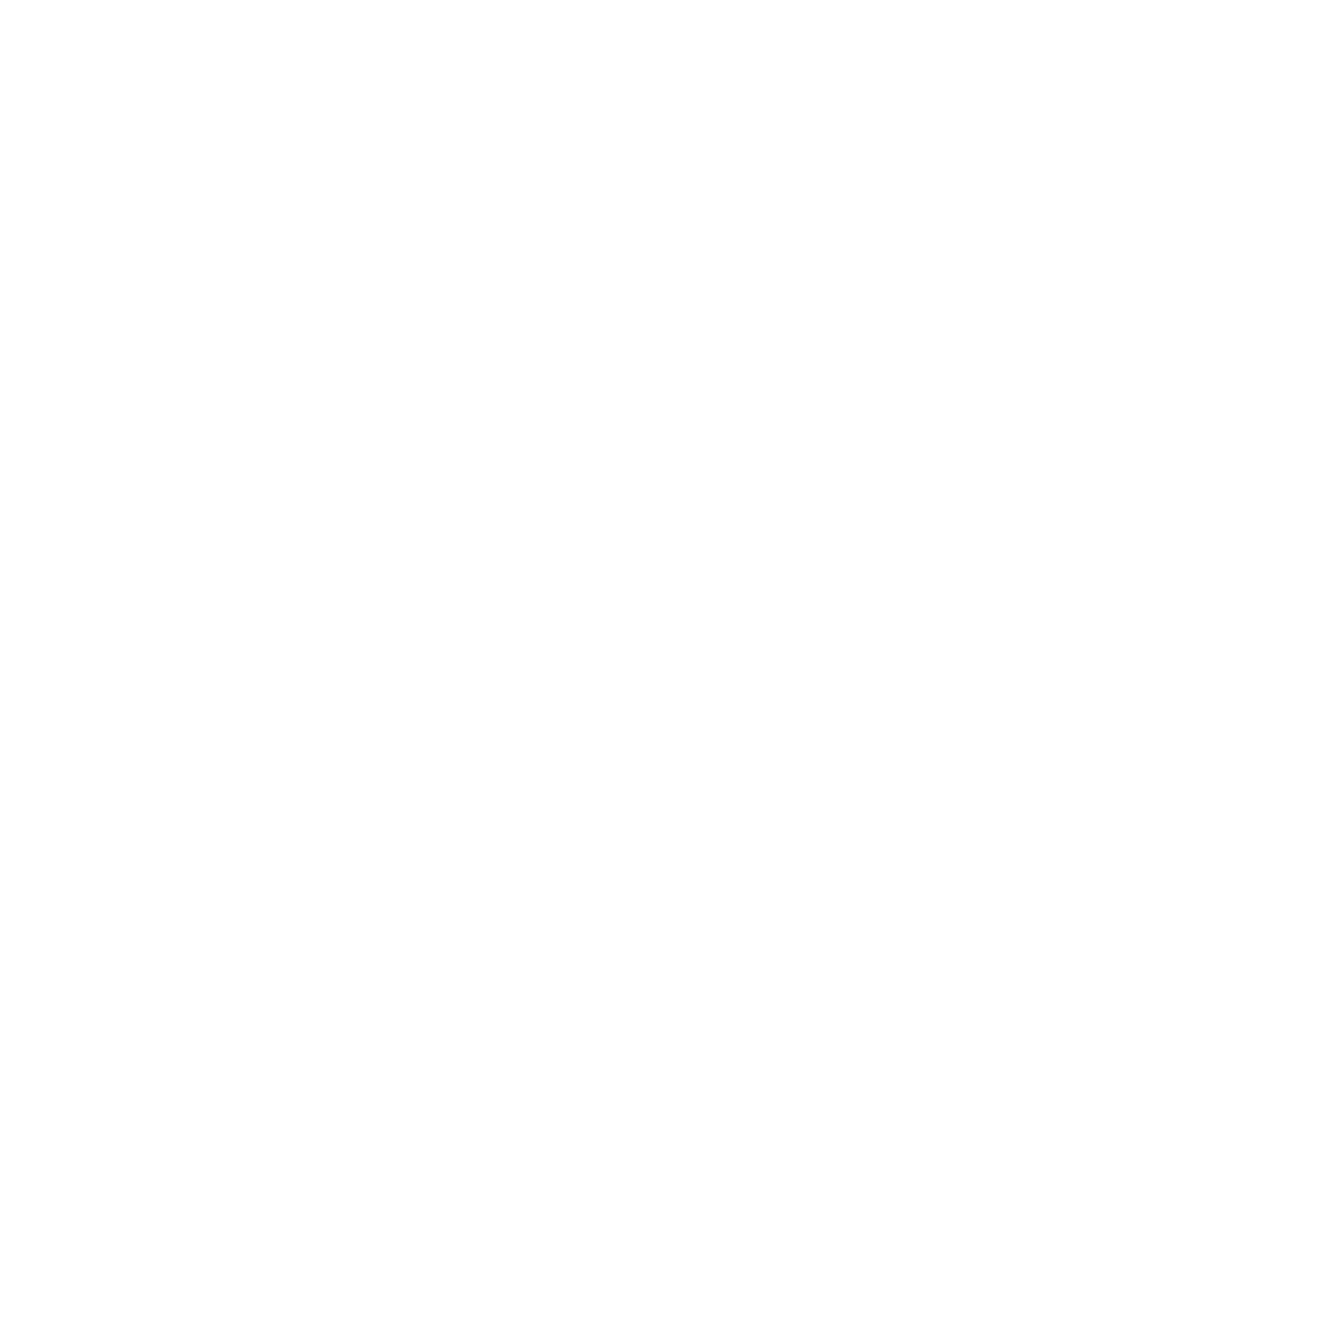 keys clipart logo